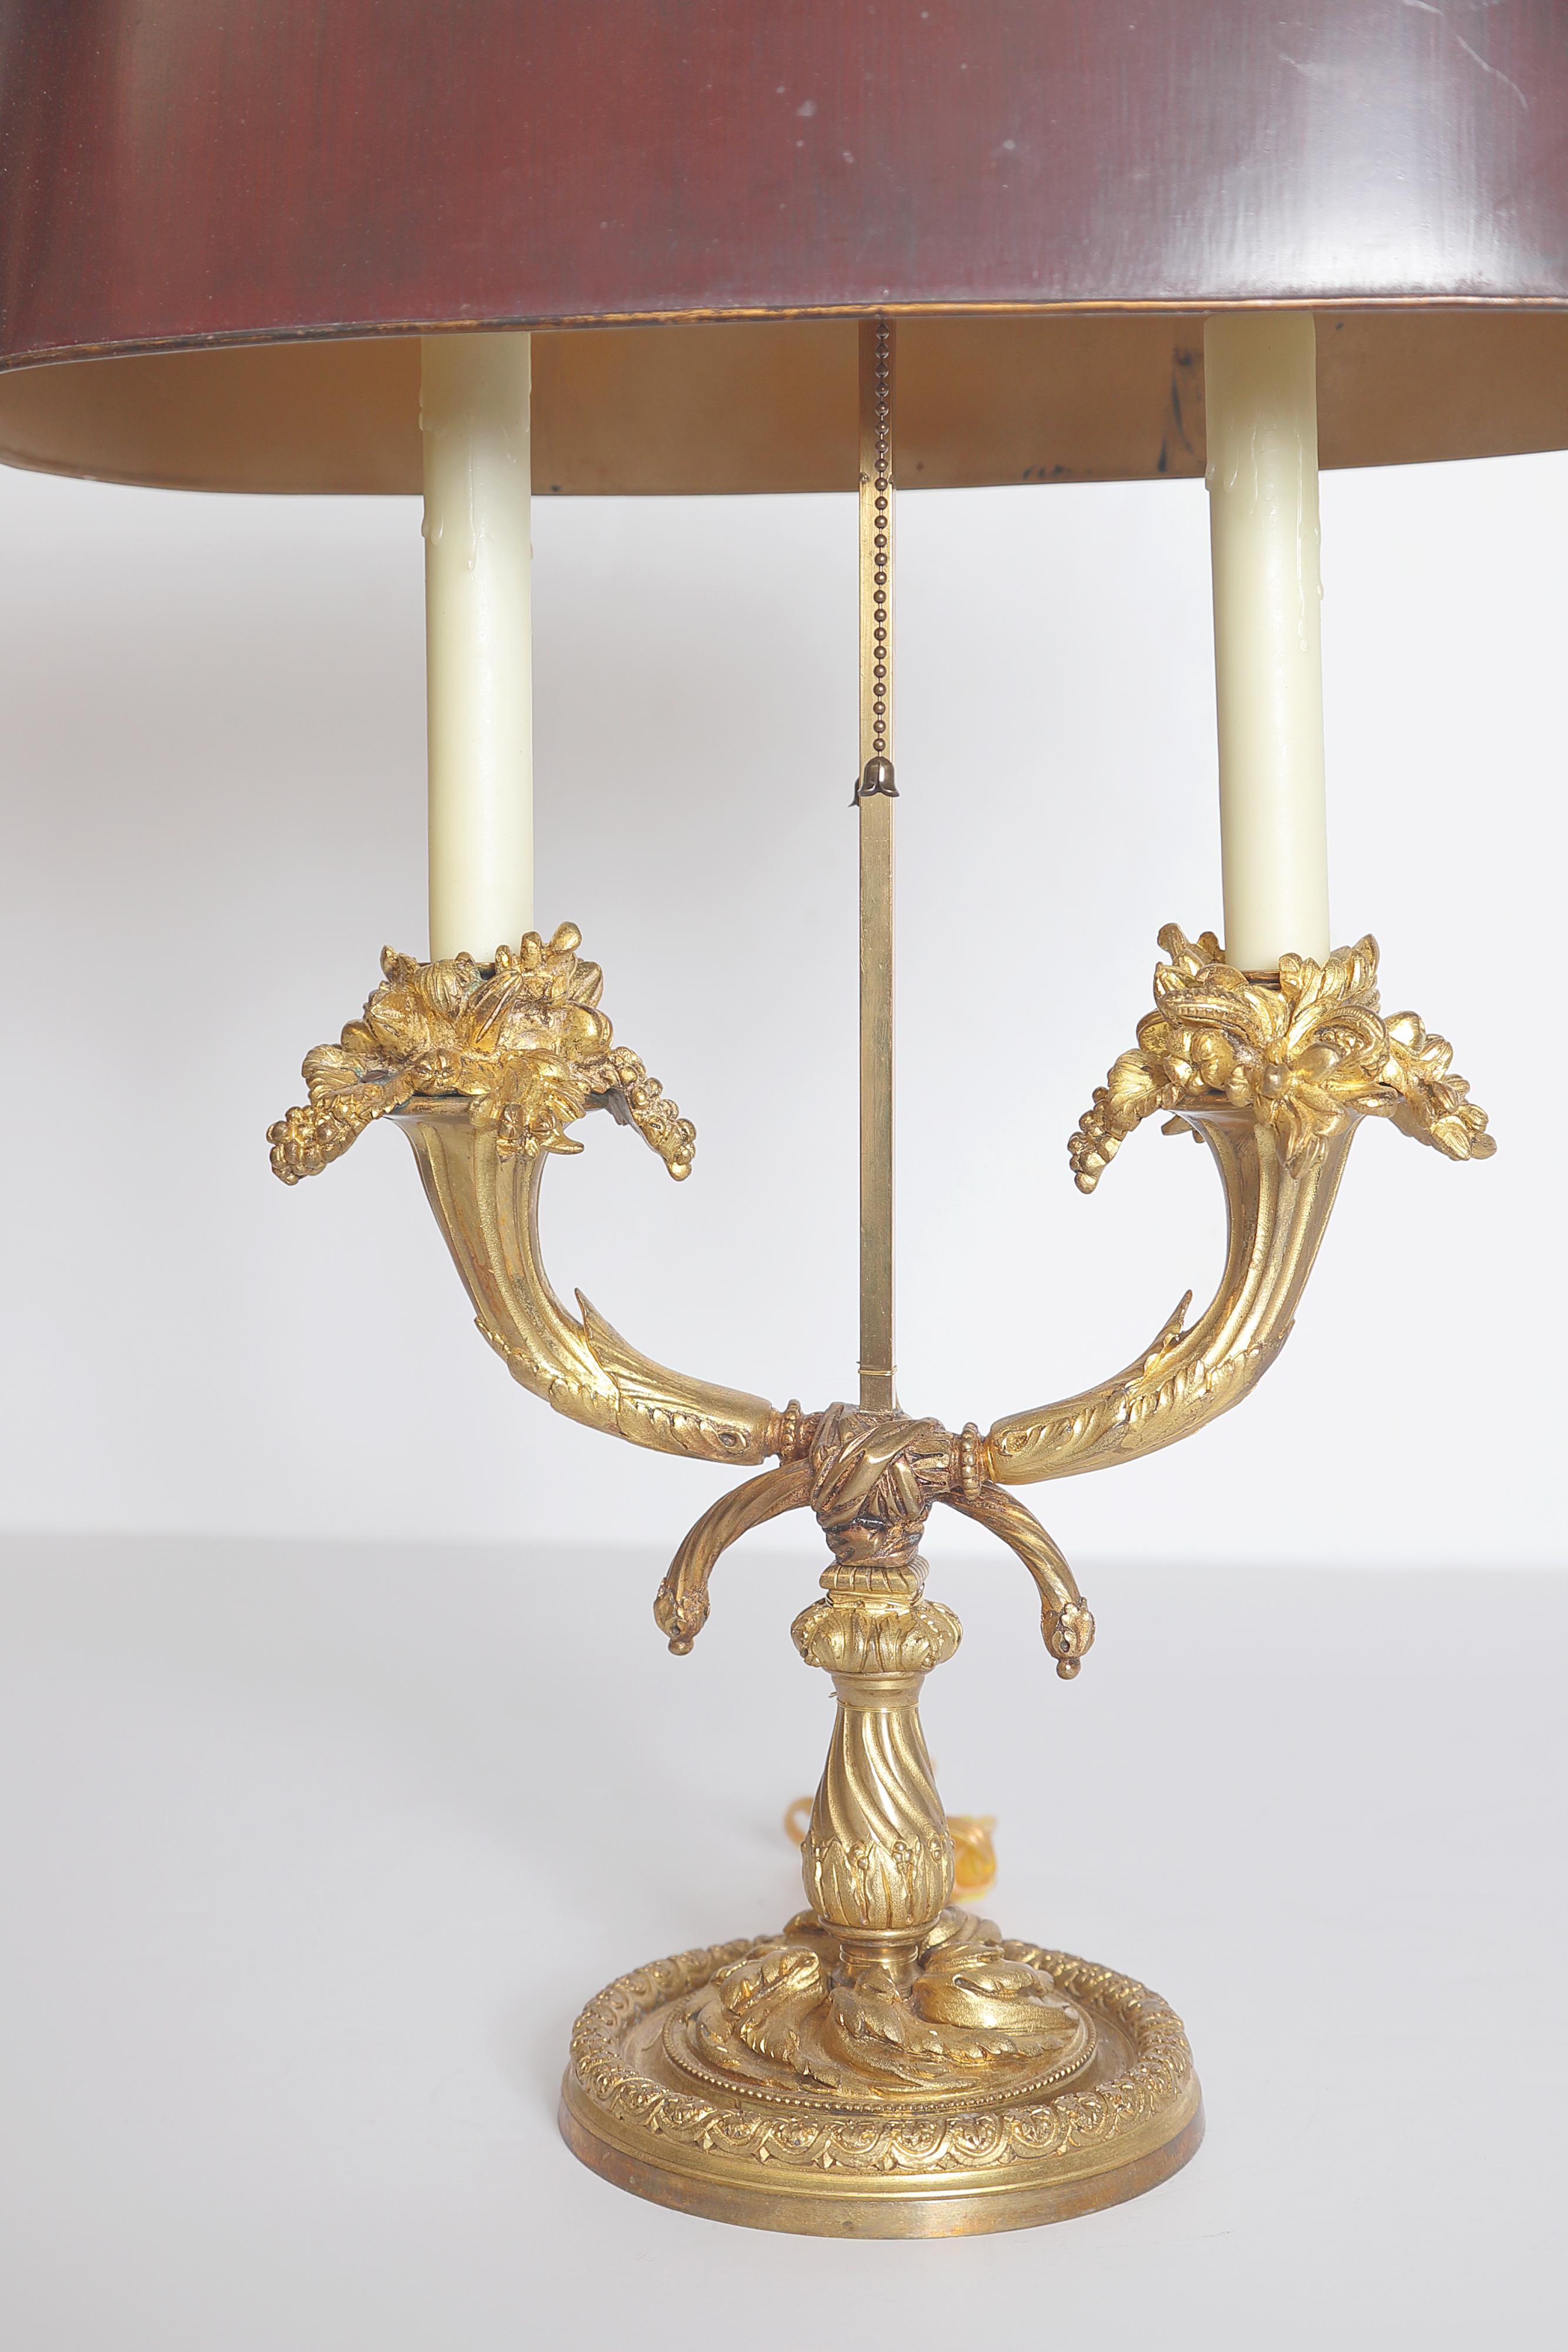 Lampe bouillotte en bronze doré de style Louis XVI du 19ème siècle avec un abat-jour en tole rouge, l'abat-jour sur deux bras feuillagés s'élevant sur une base circulaire avec des moulures florales et des perles. Seconde moitié du XIXe siècle.